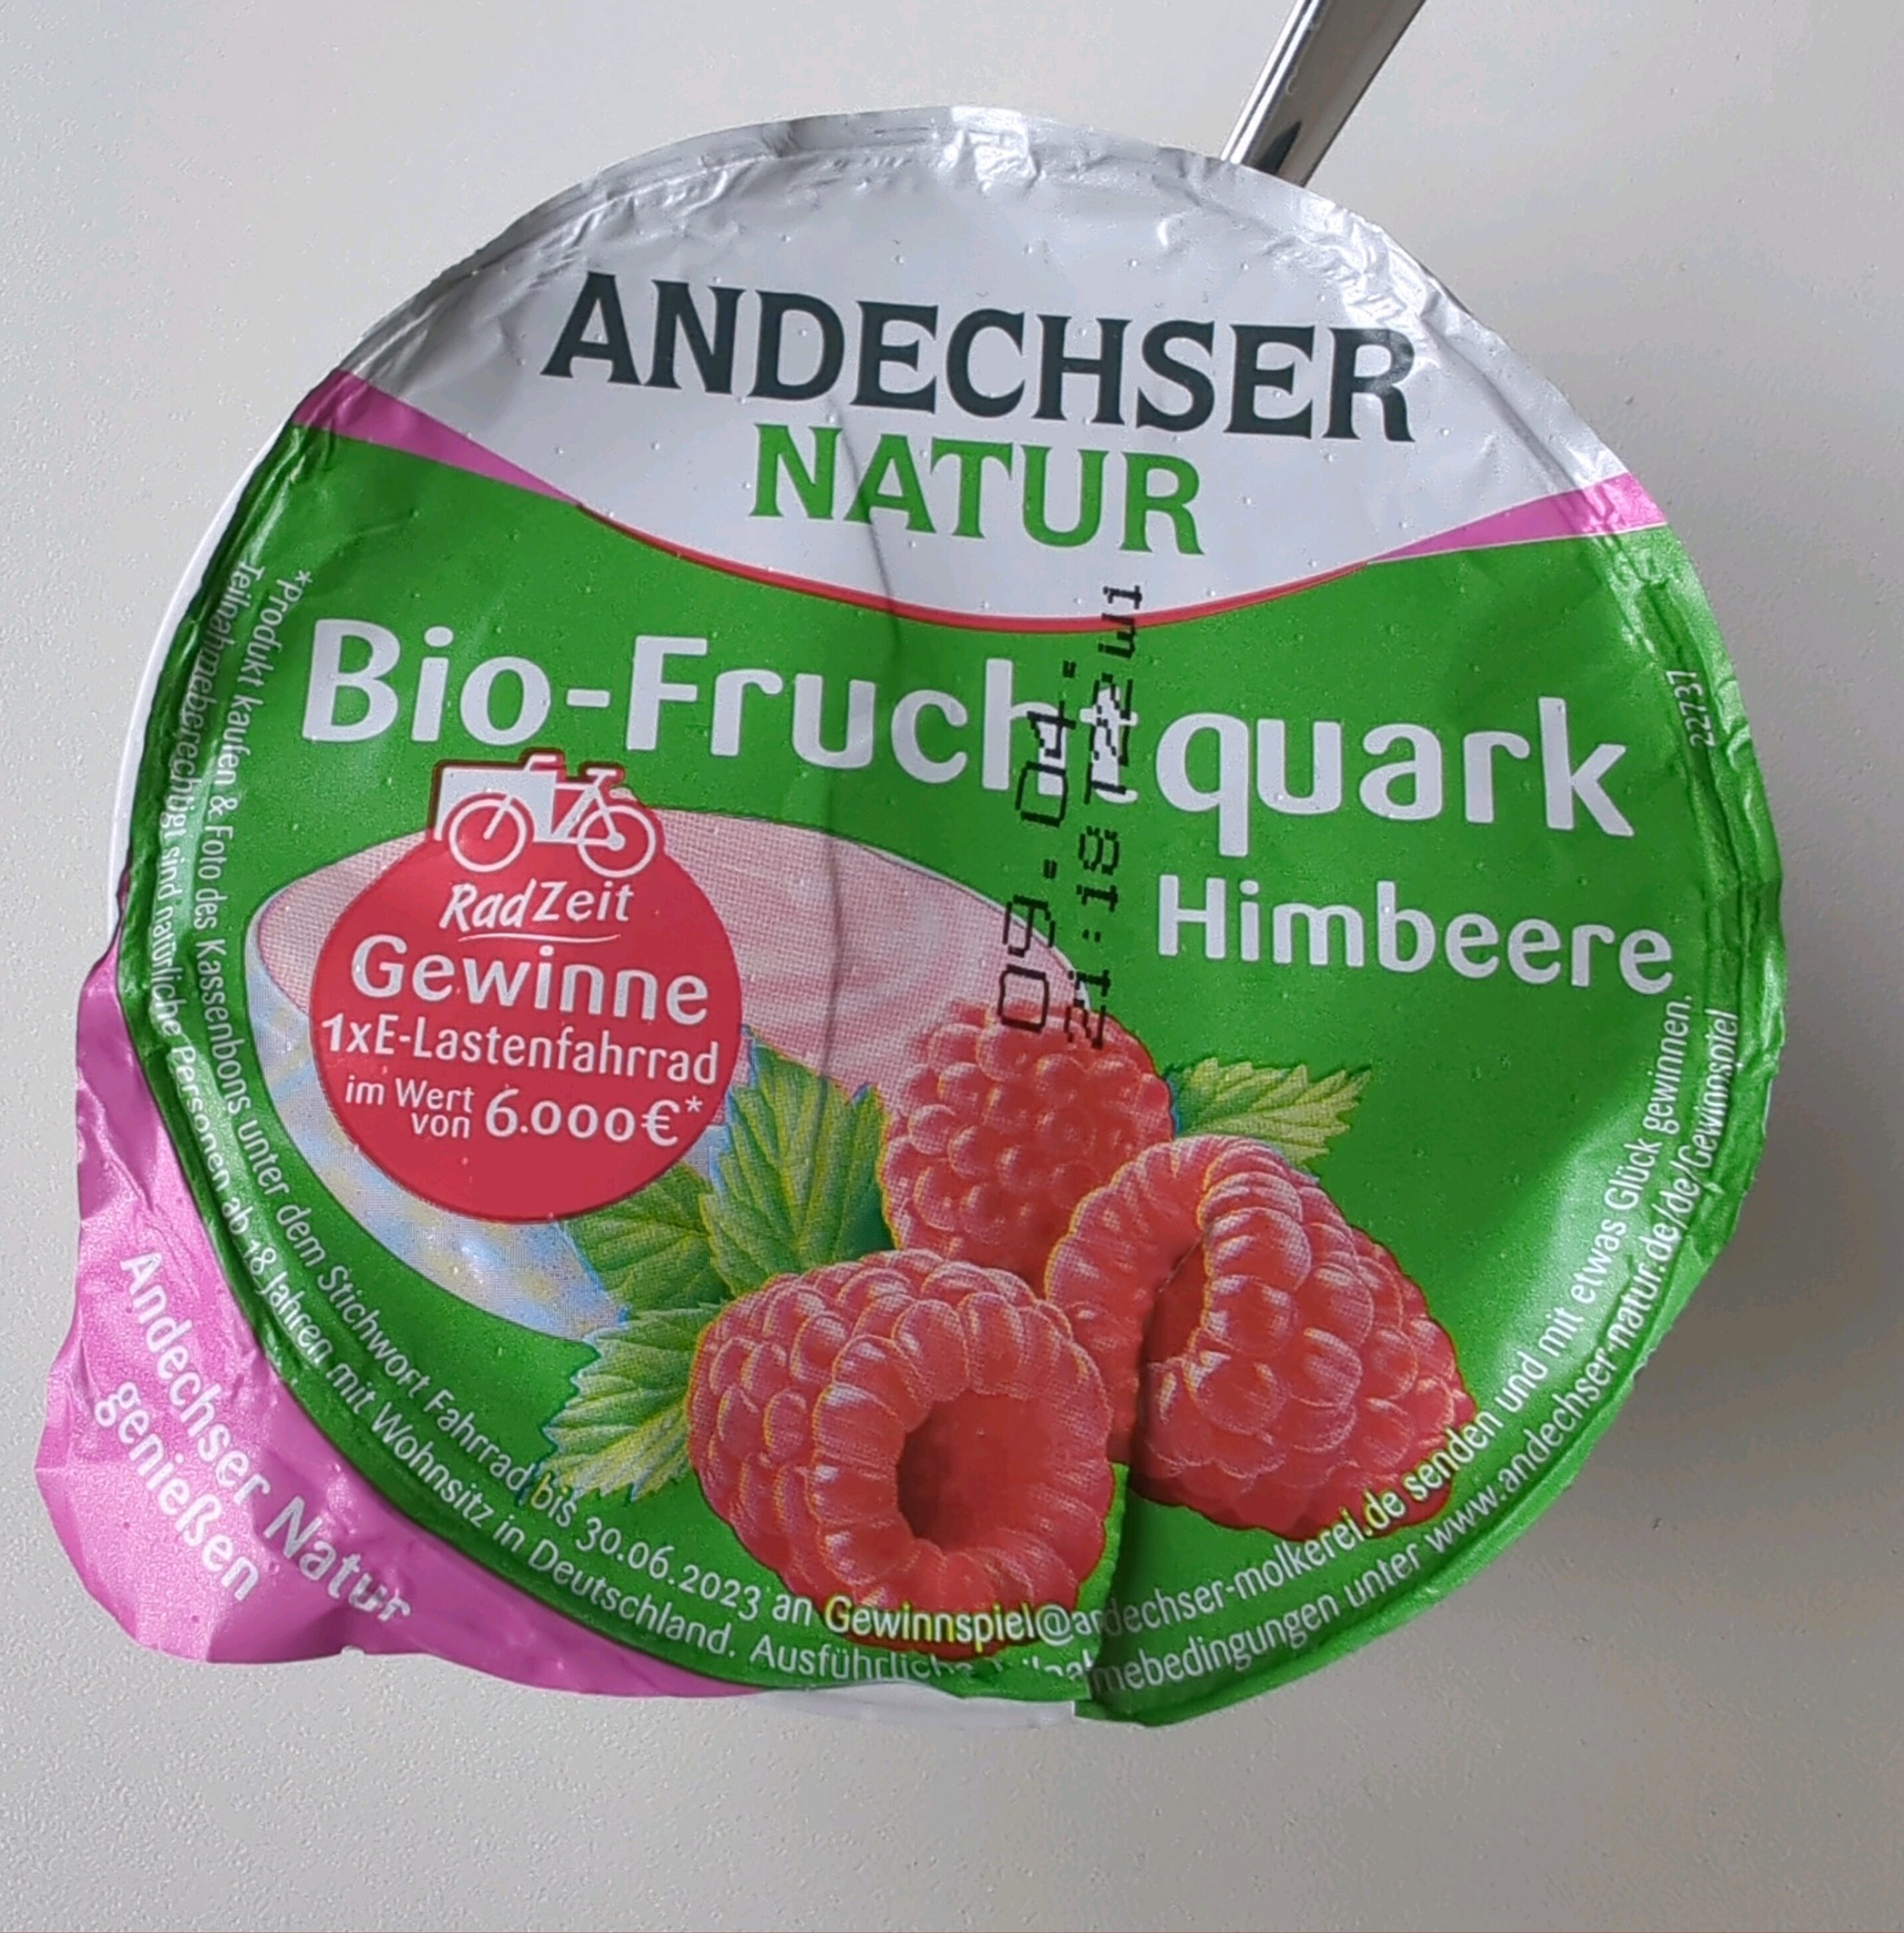 Bio-Fruchtquark - Himbeere - Andechser Natur - 150 g